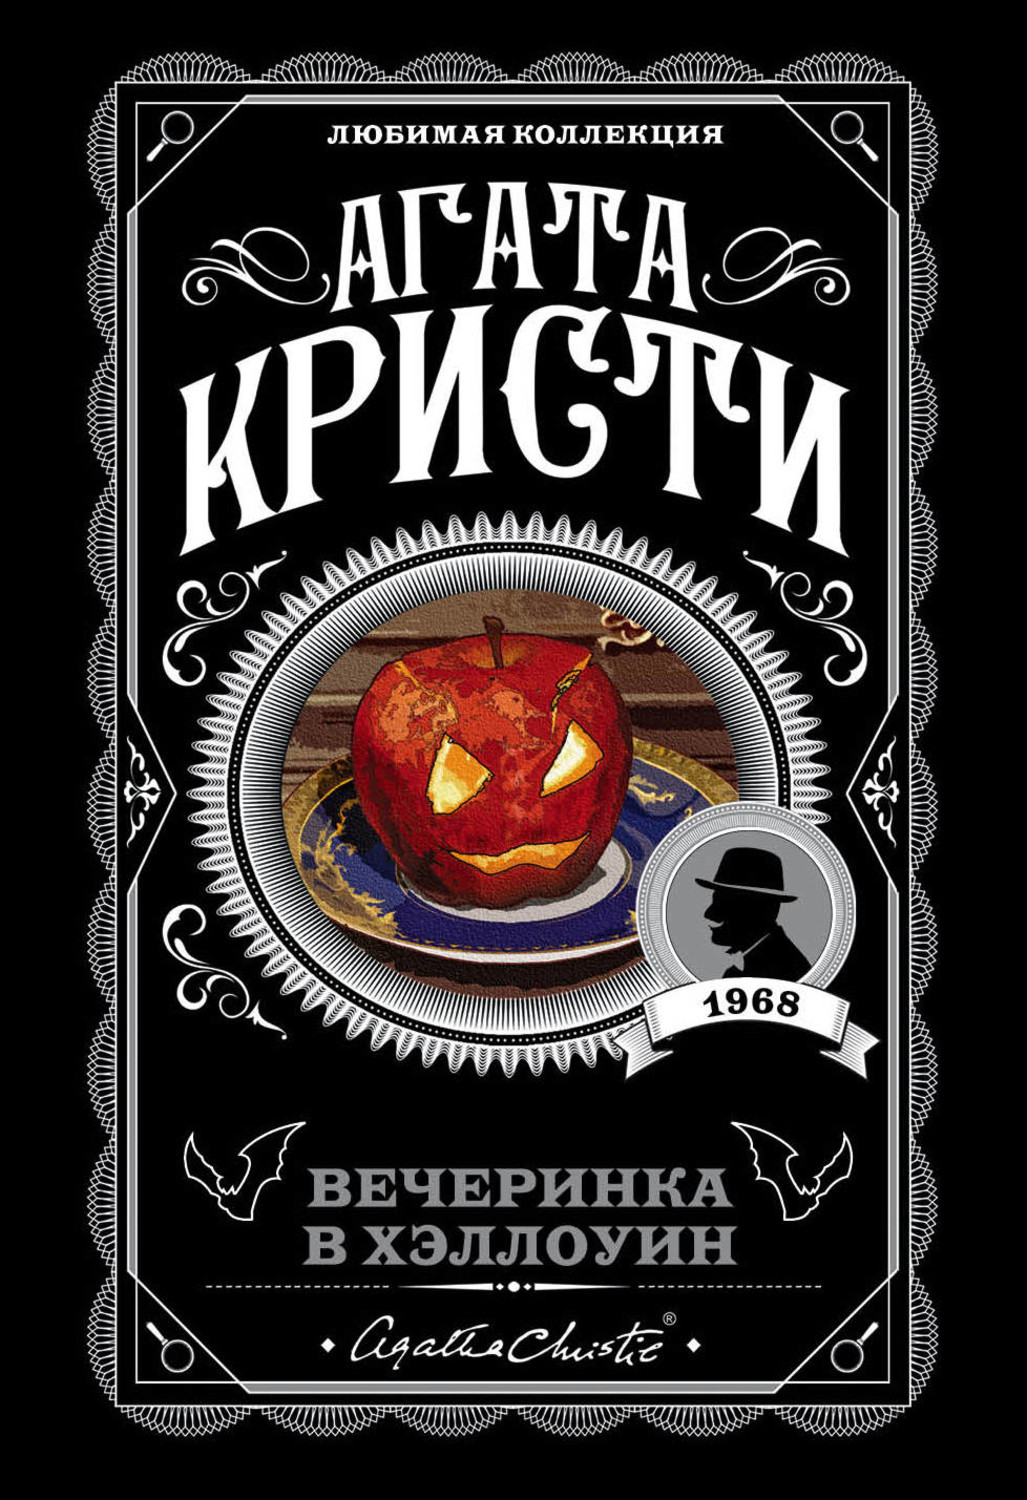 Хэллоуин в Москве программа мероприятий, вечеринки в клубах, куда пойти, где отметить